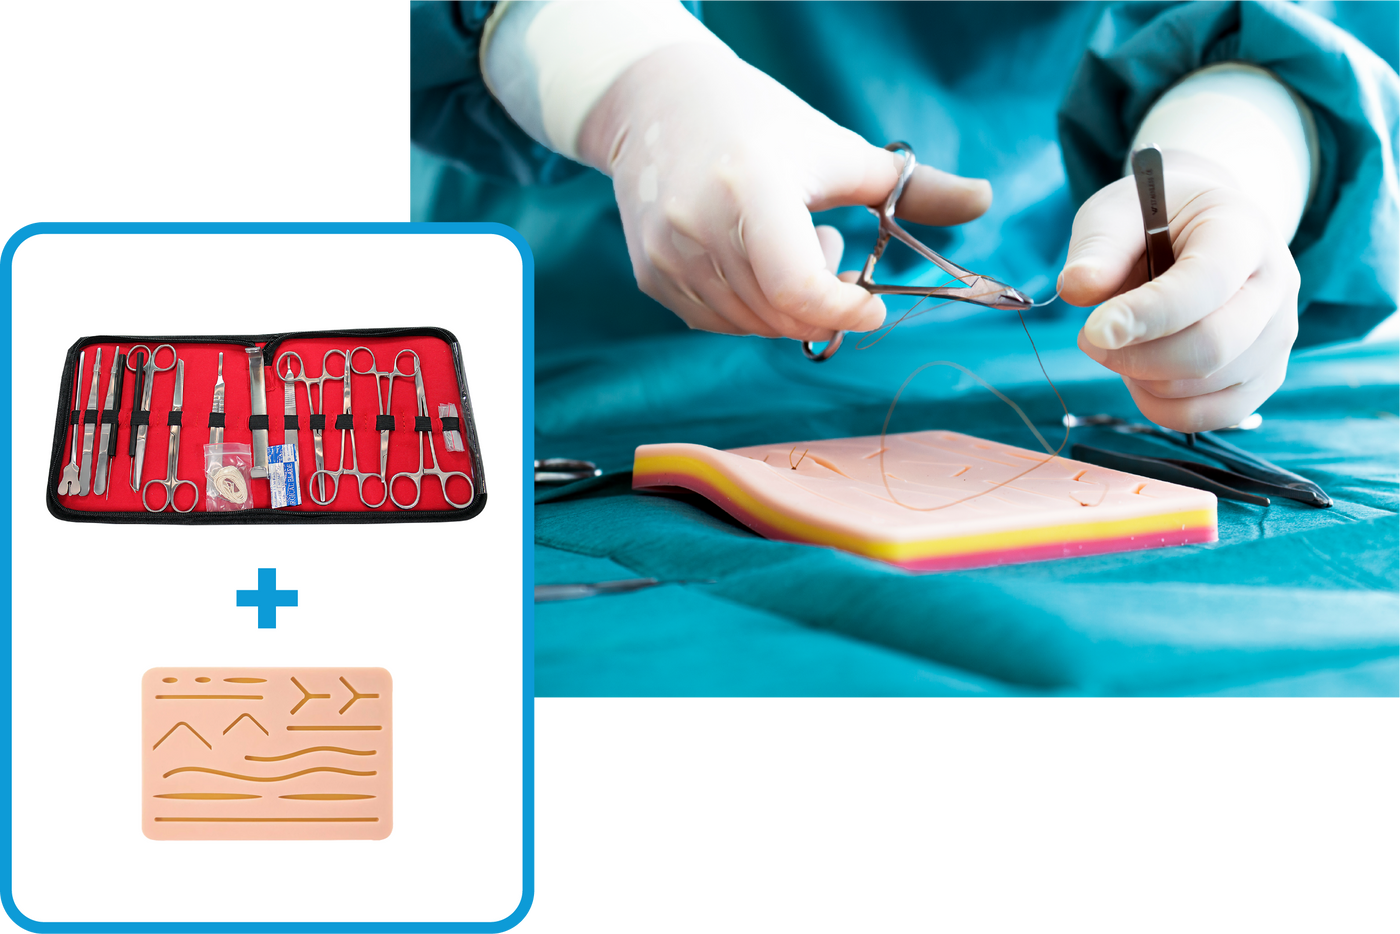 Kit de sutura todo incluido que desarrolla y perfecciona las técnicas de  sutura